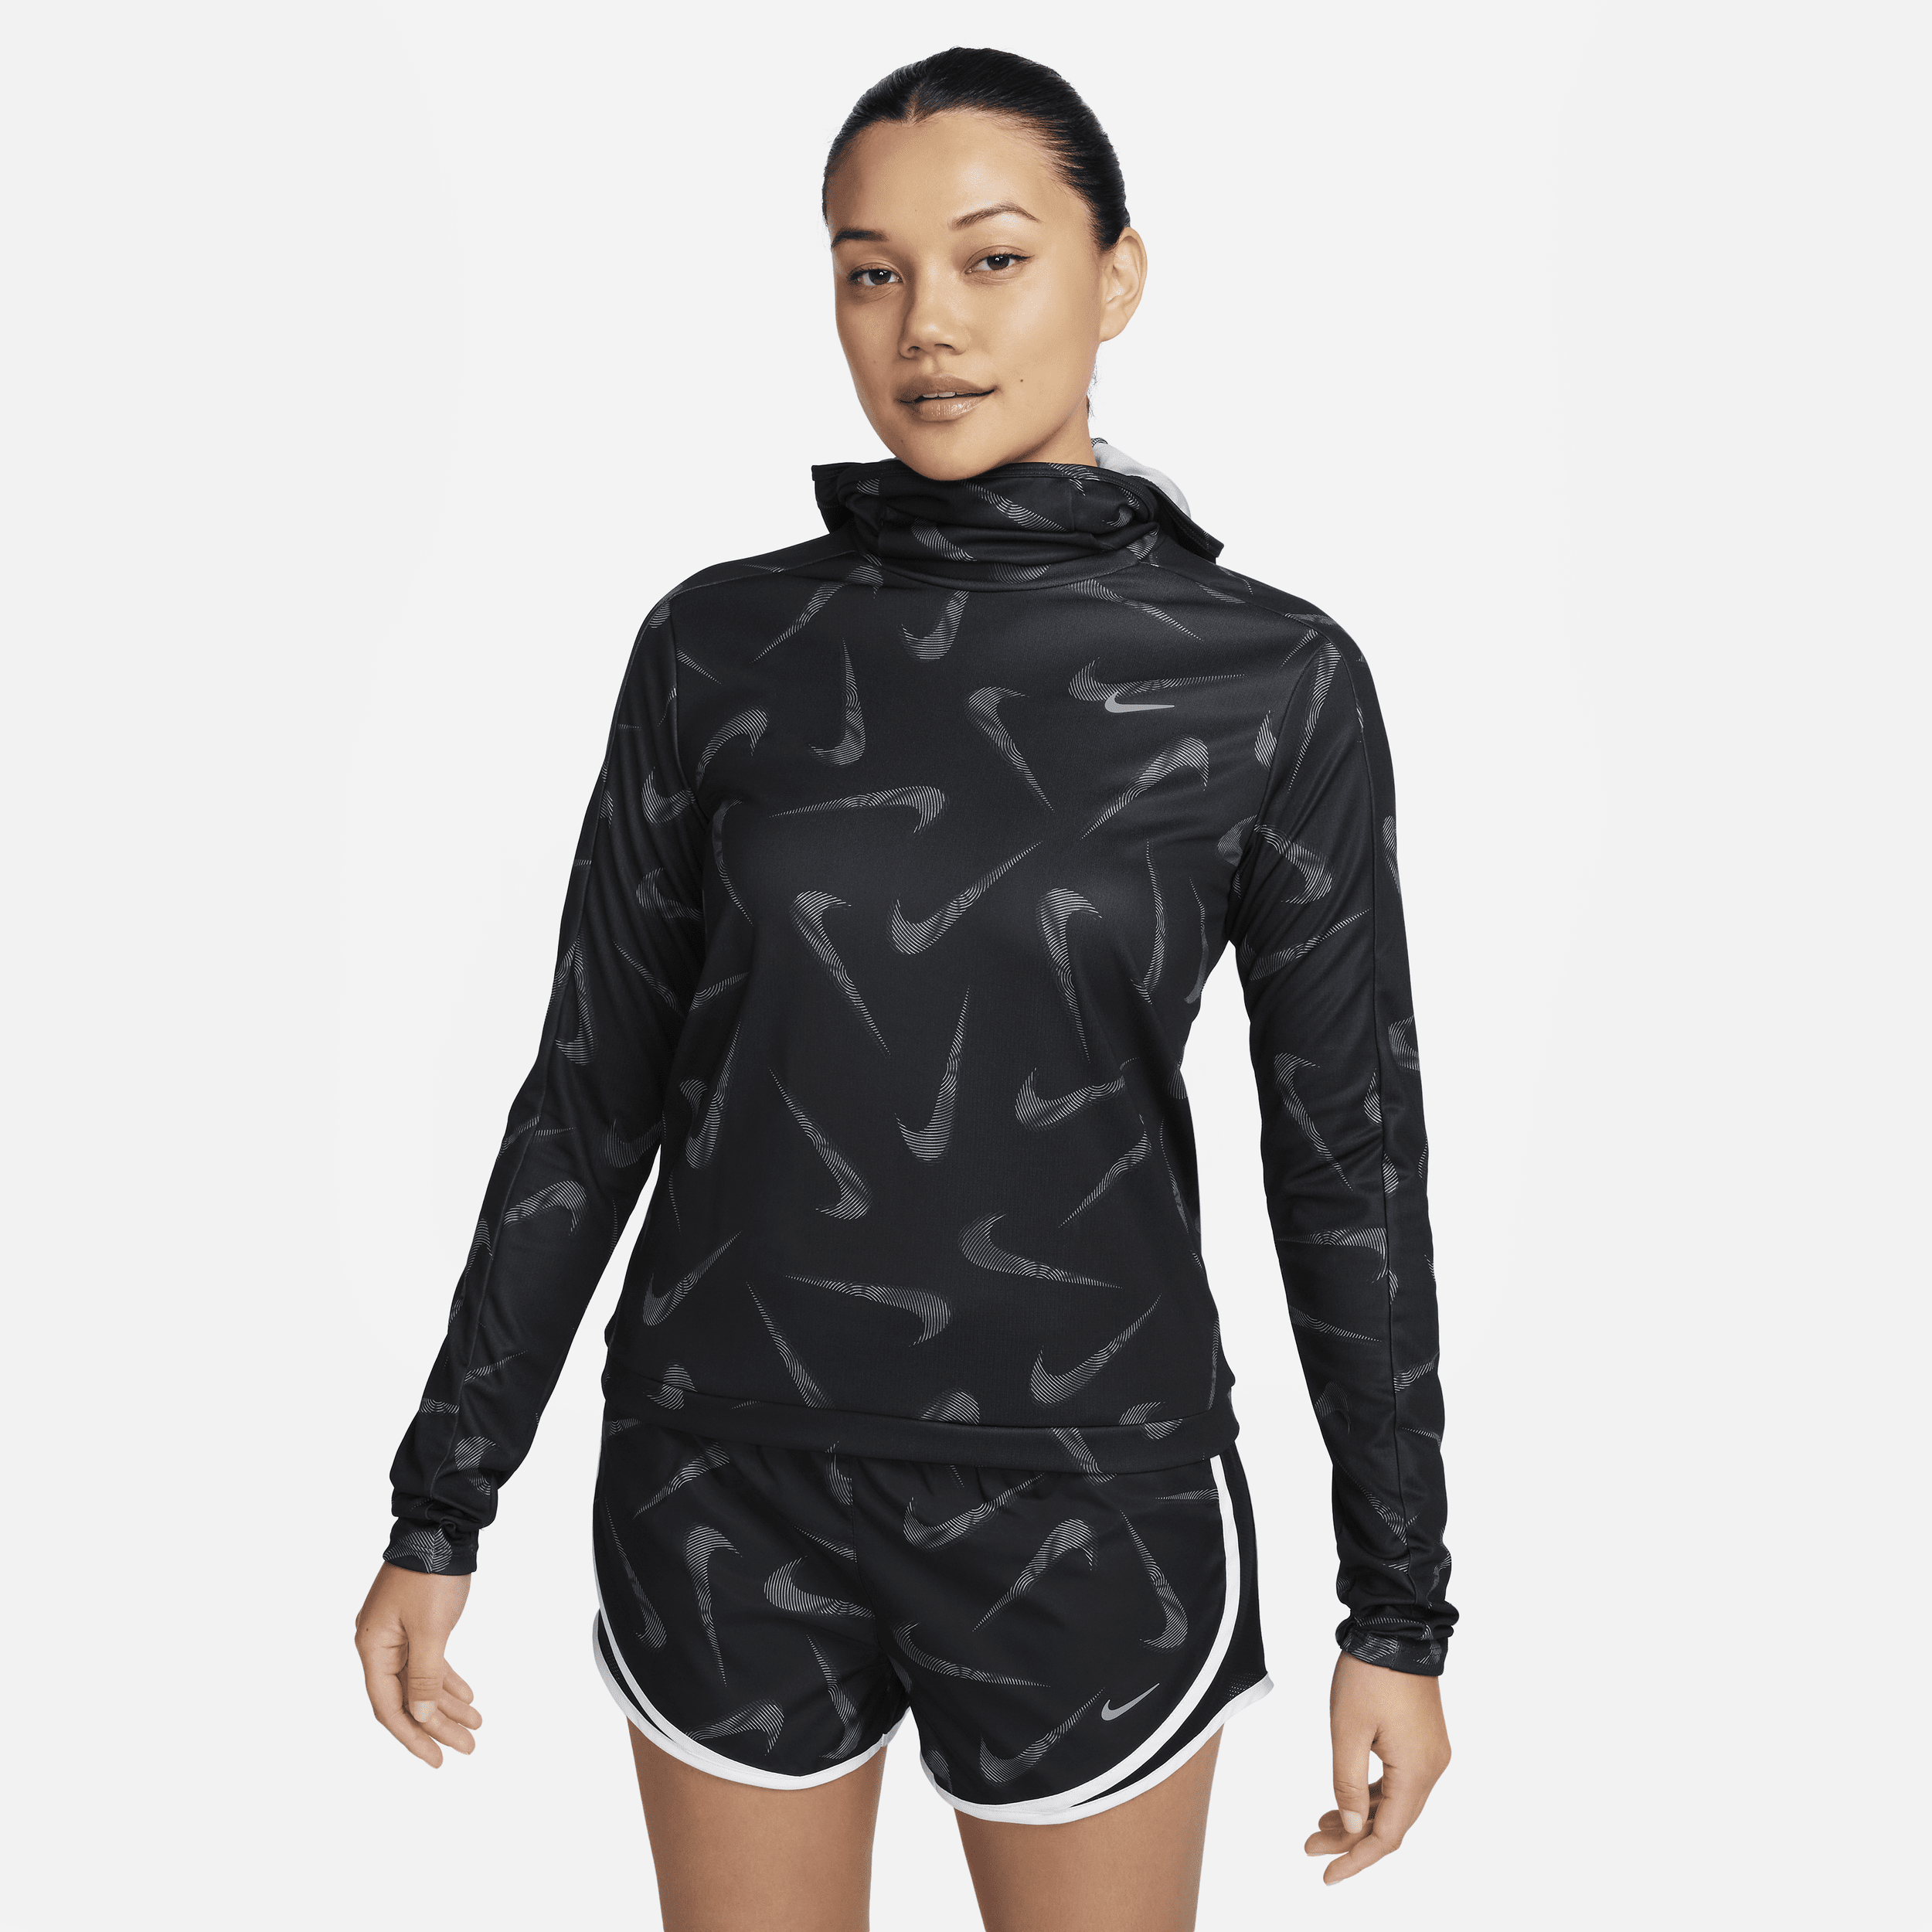 Printet Nike Swoosh-løbejakke med hætte til kvinder - sort